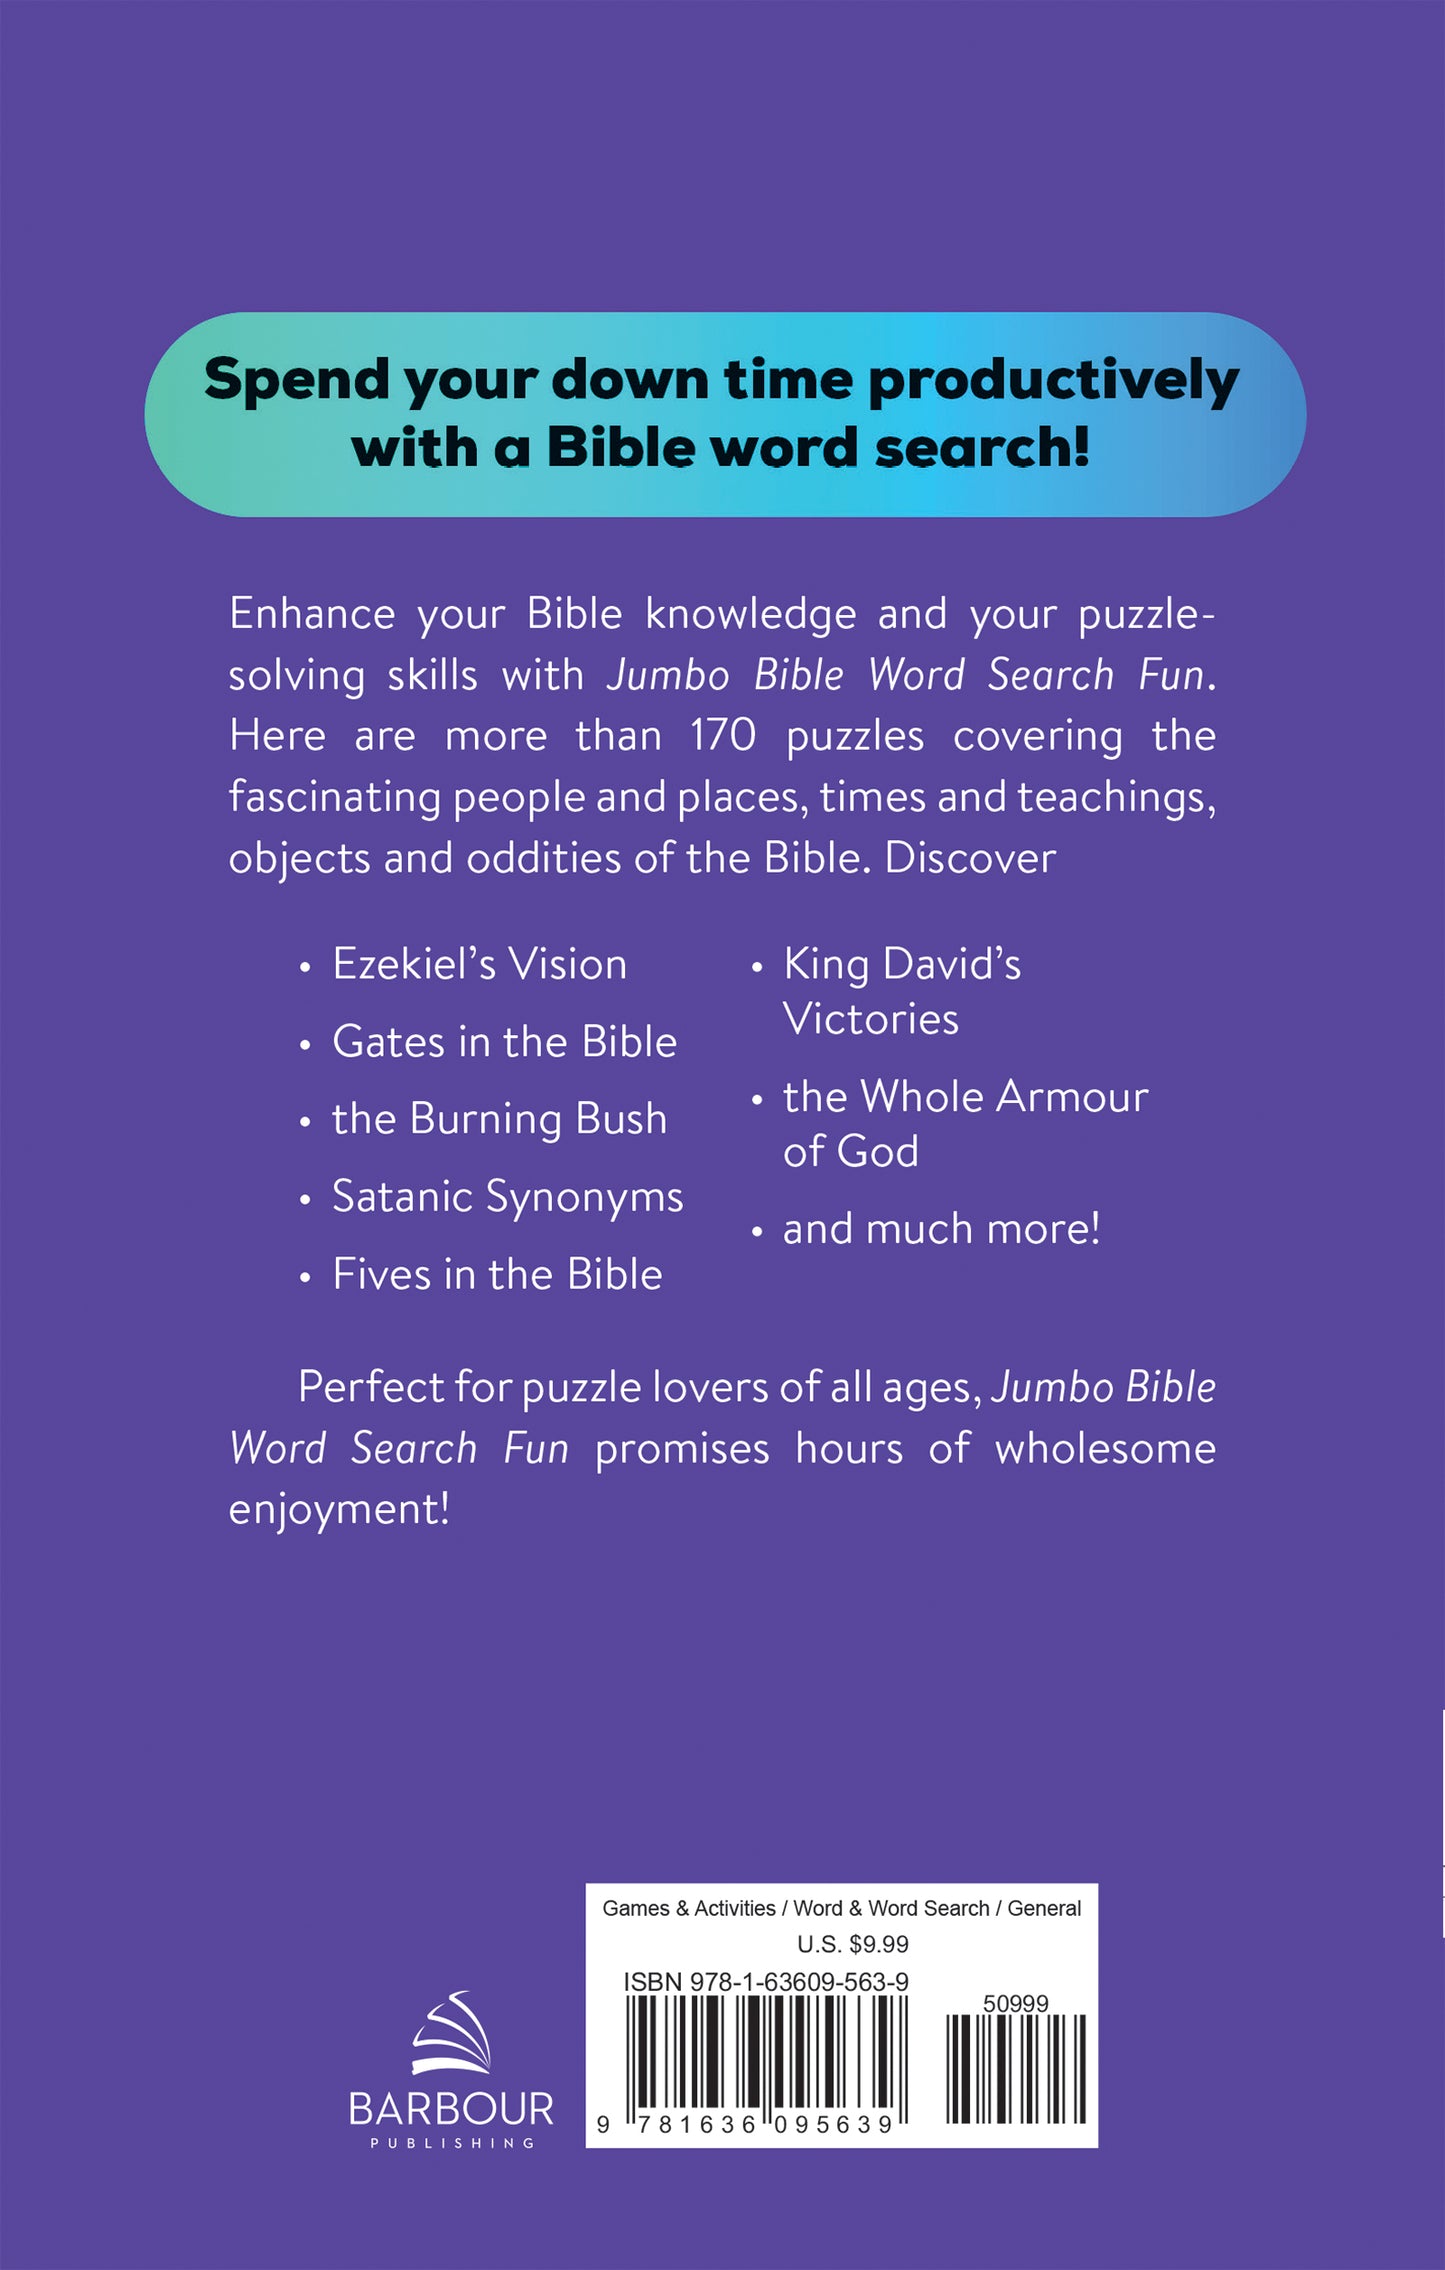 Jumbo Bible Word Search Fun - The Christian Gift Company